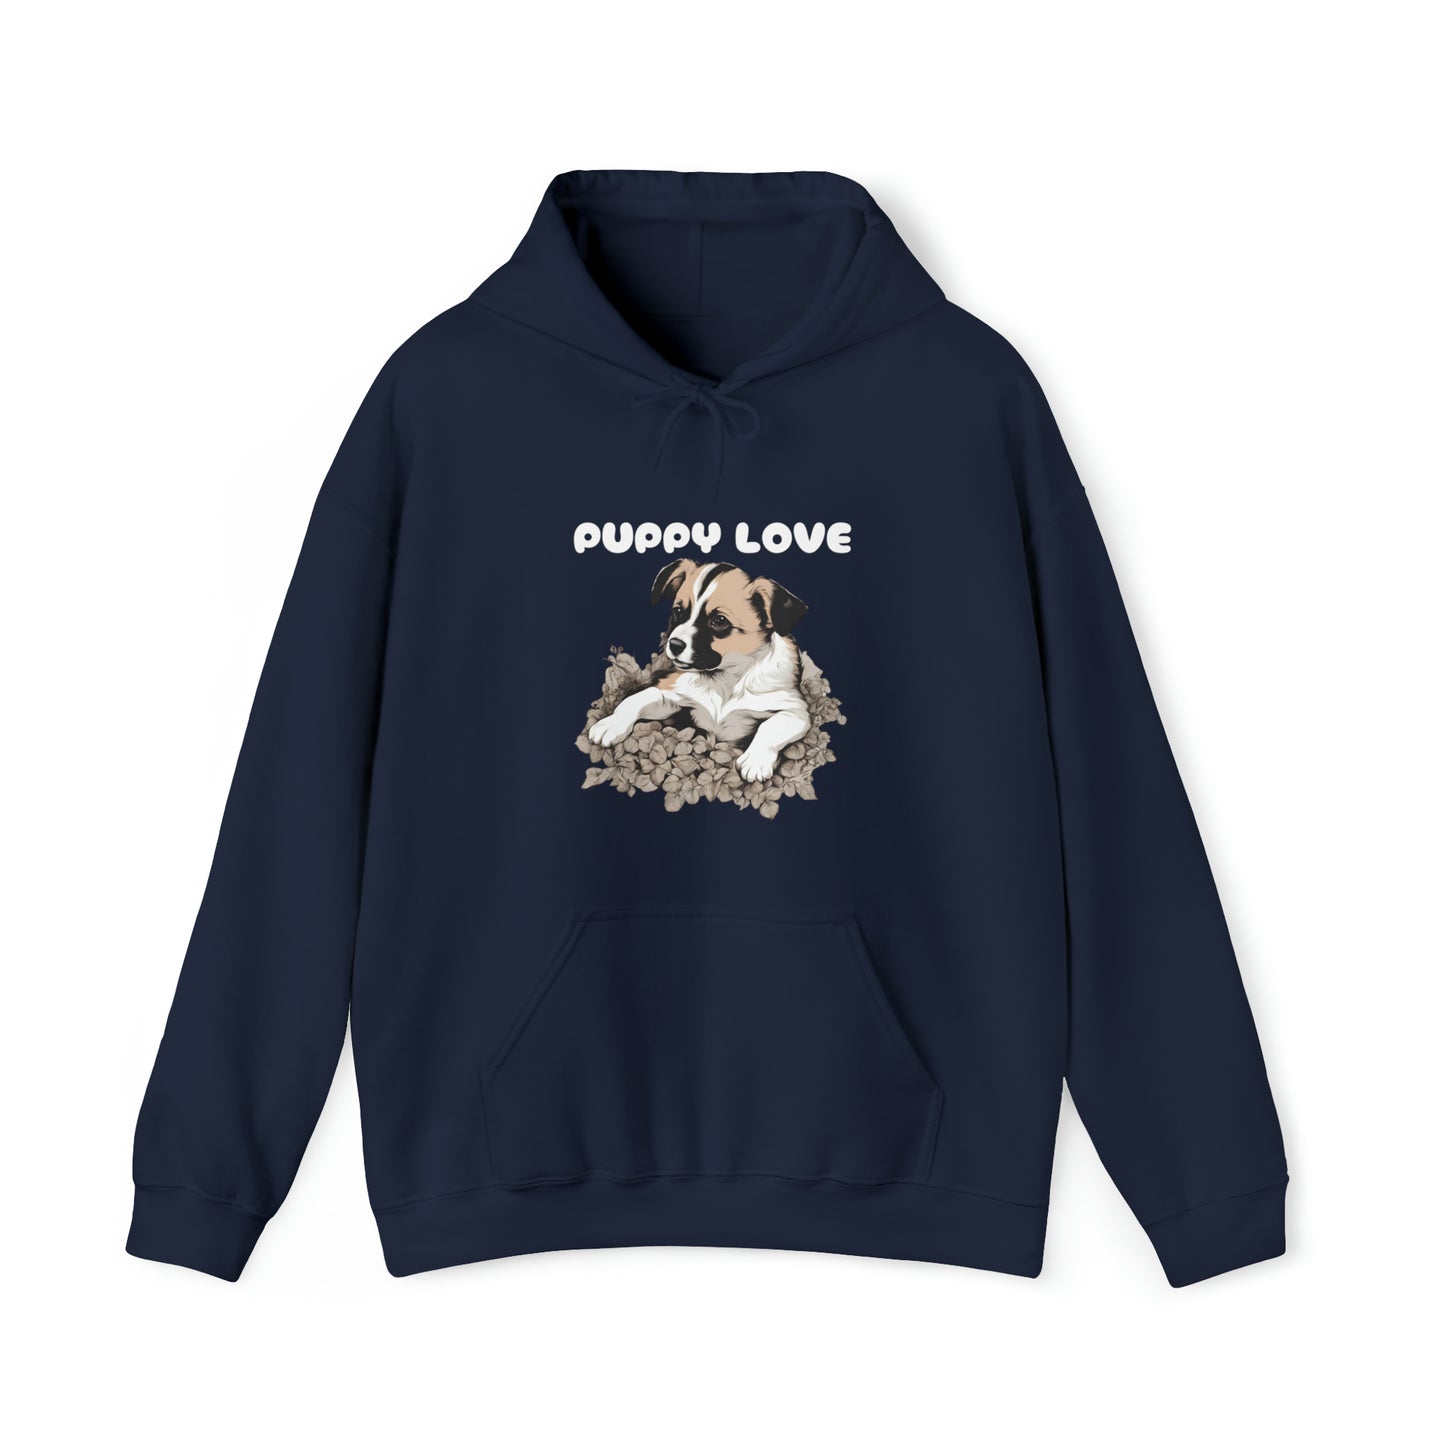 Puppy Love unisex hoodie gift